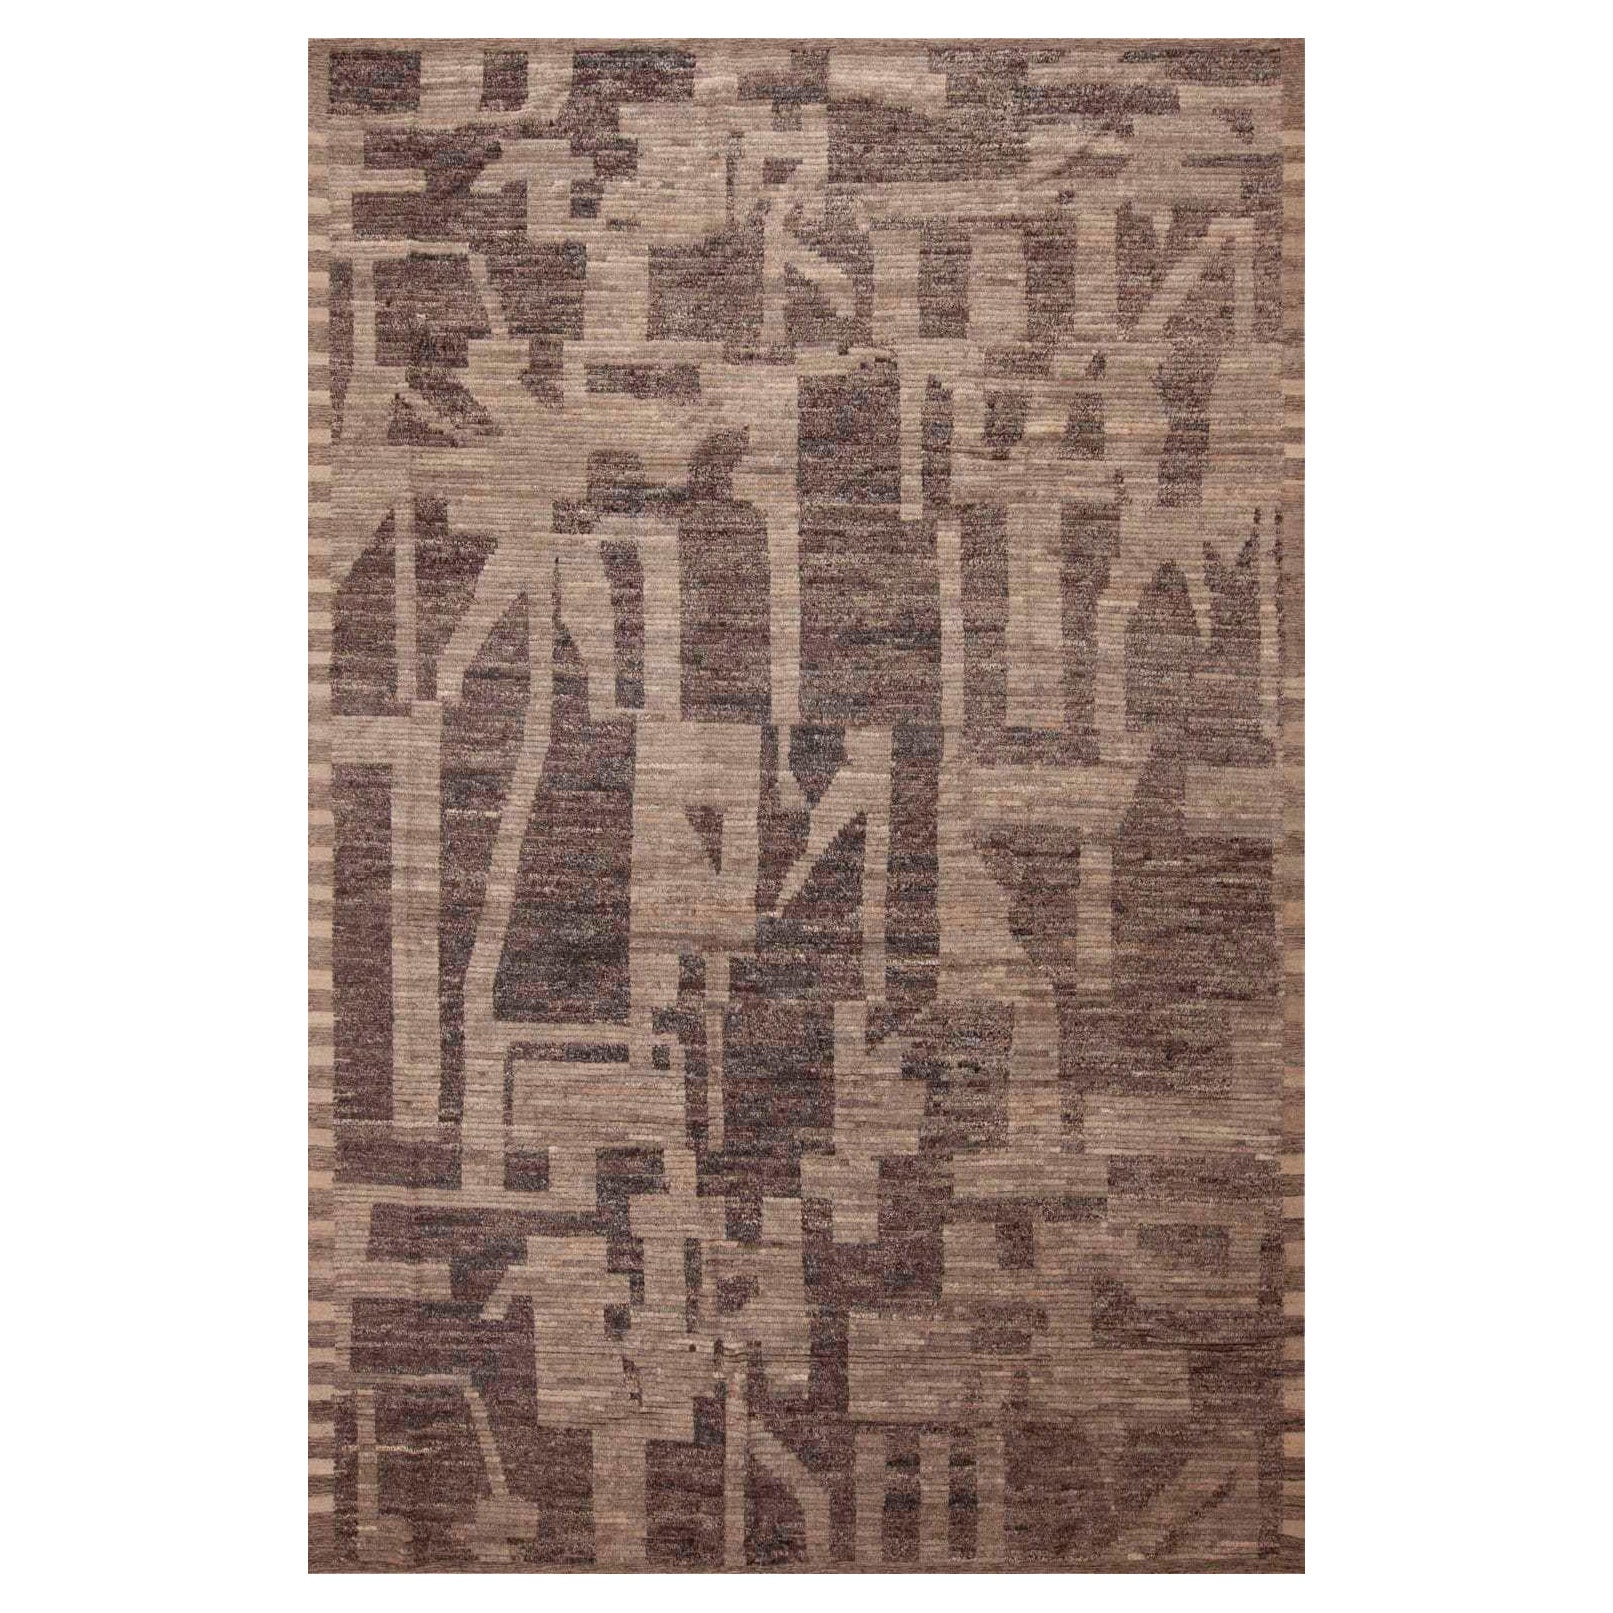 Collection Nazmiyal, tribal, géométrique, gris terre, tapis moderne 9'7" x 14'6"